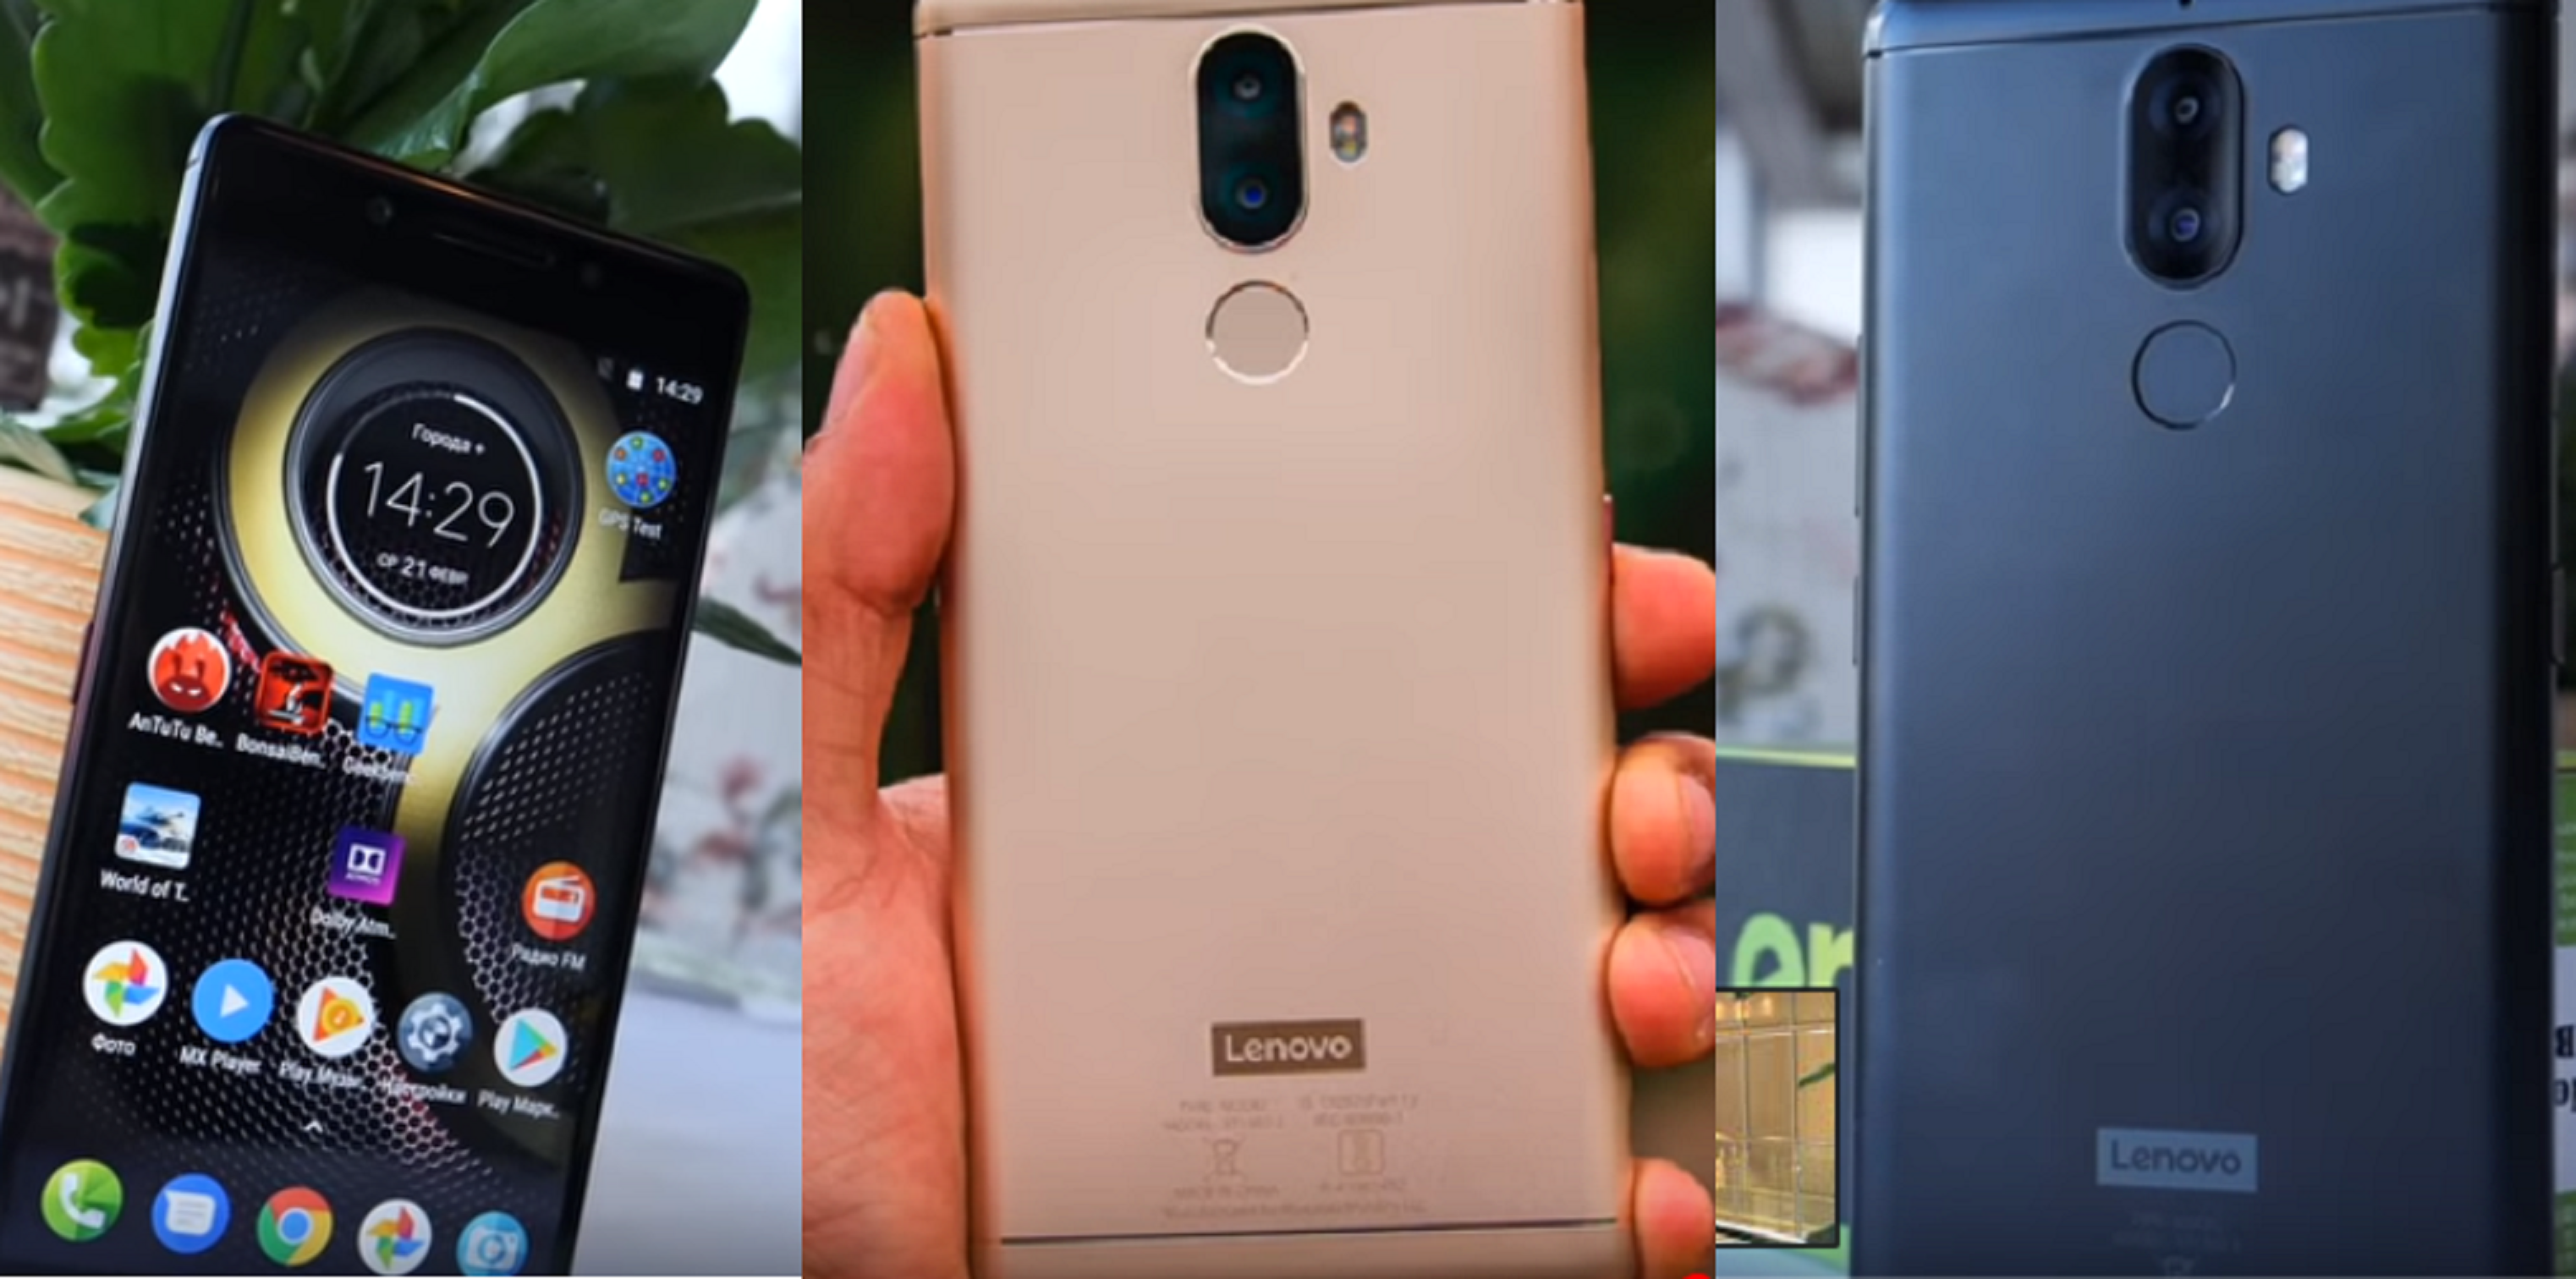 Smartfón Lenovo K8 Note 64 GB - výhody a nevýhody